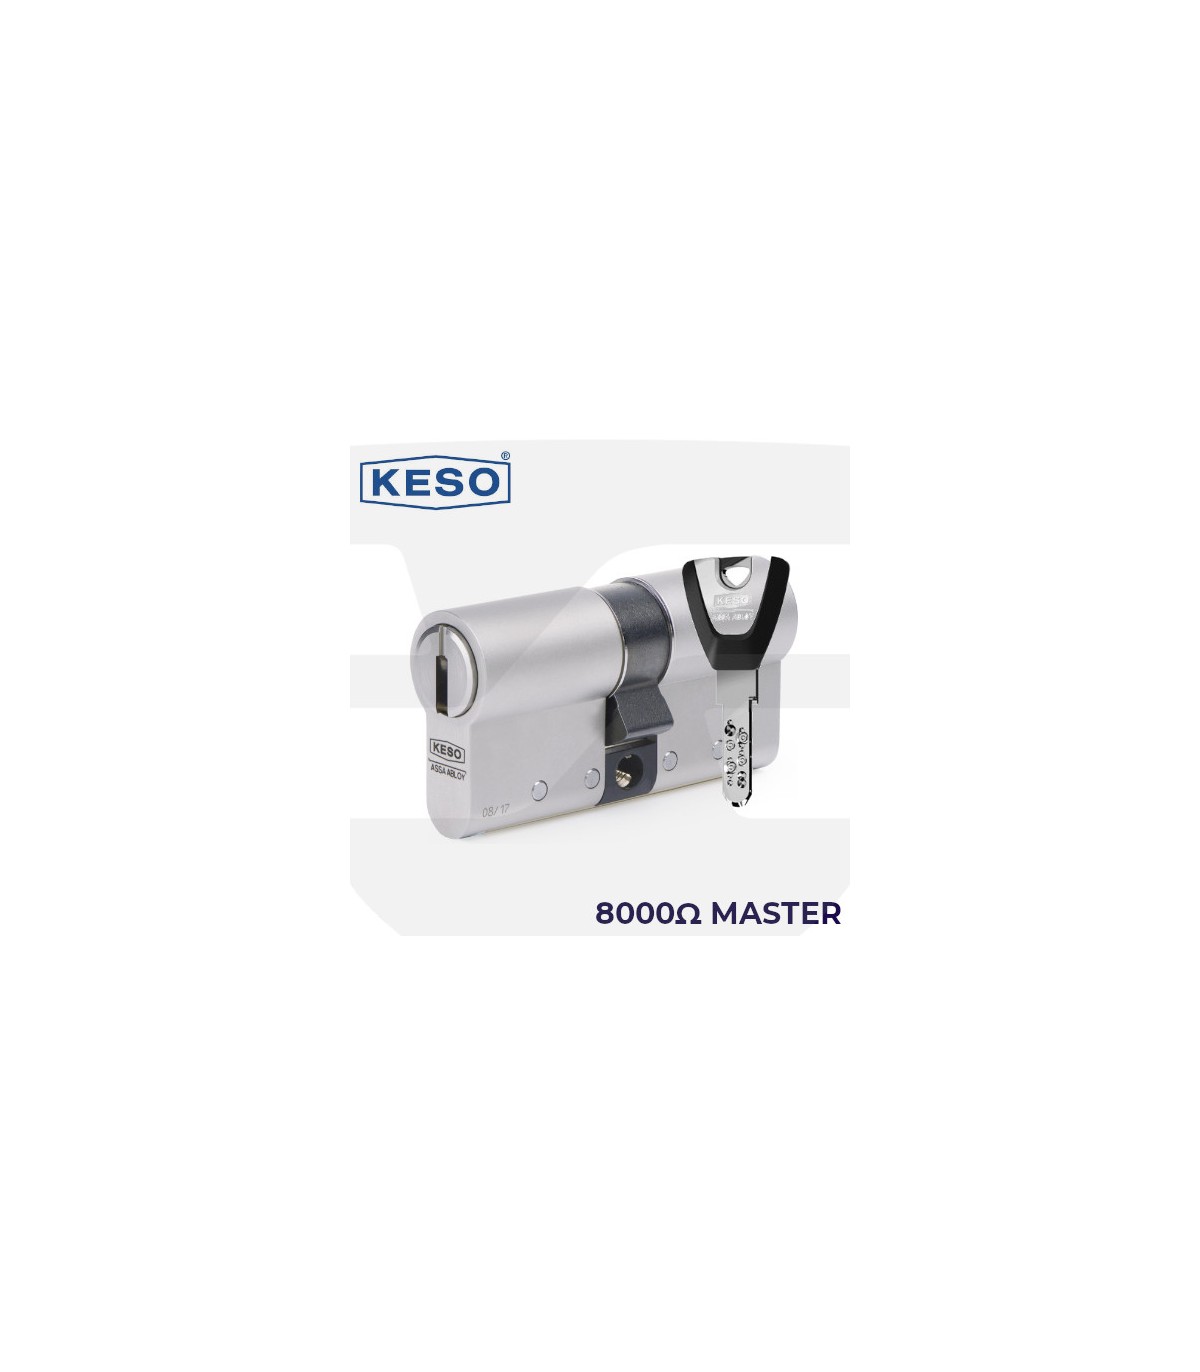 Bombillo Keso 8000 Ω2 Premium